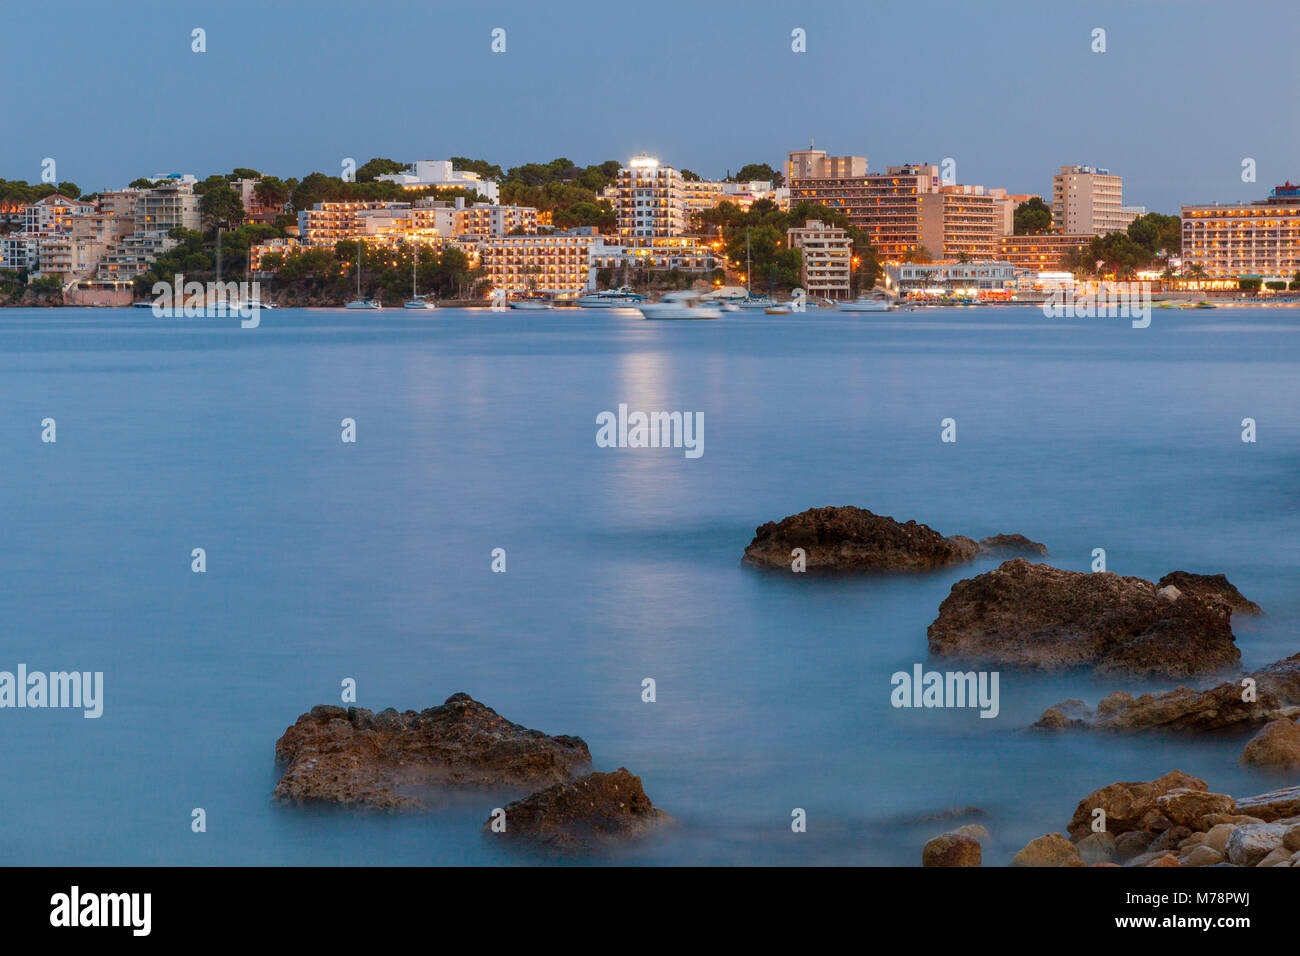 Palma Nova Beach, Majorca, Balearic Islands, Spain, Mediterranean, Europe Stock Photo